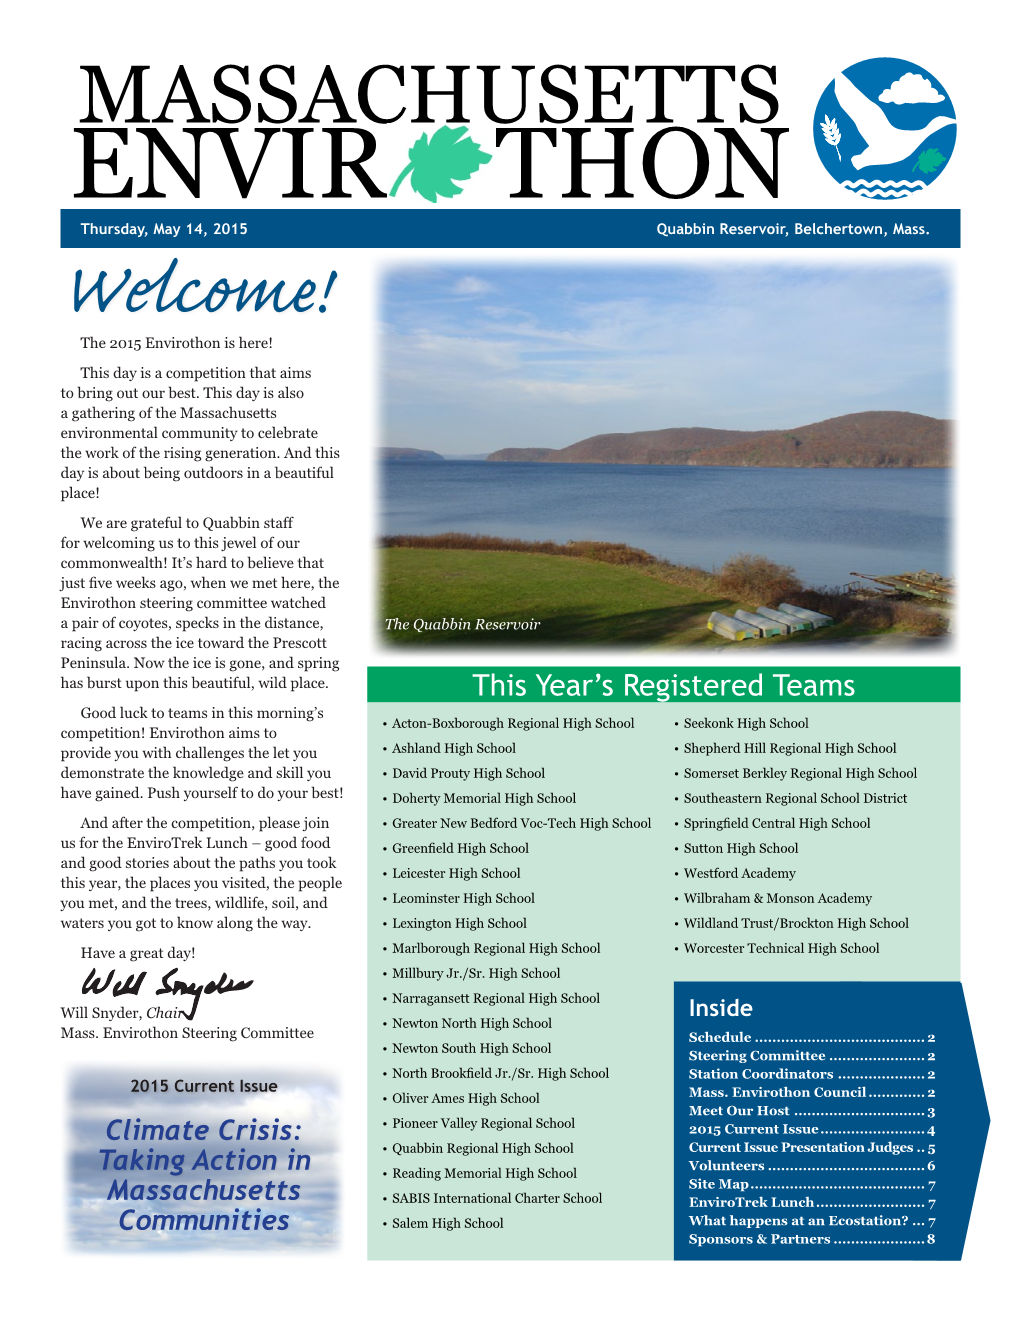 ENVIR THON MASSACHUSETTS Thursday, May 14, 2015 Quabbin Reservoir, Belchertown,ENVIR� Mass.THON